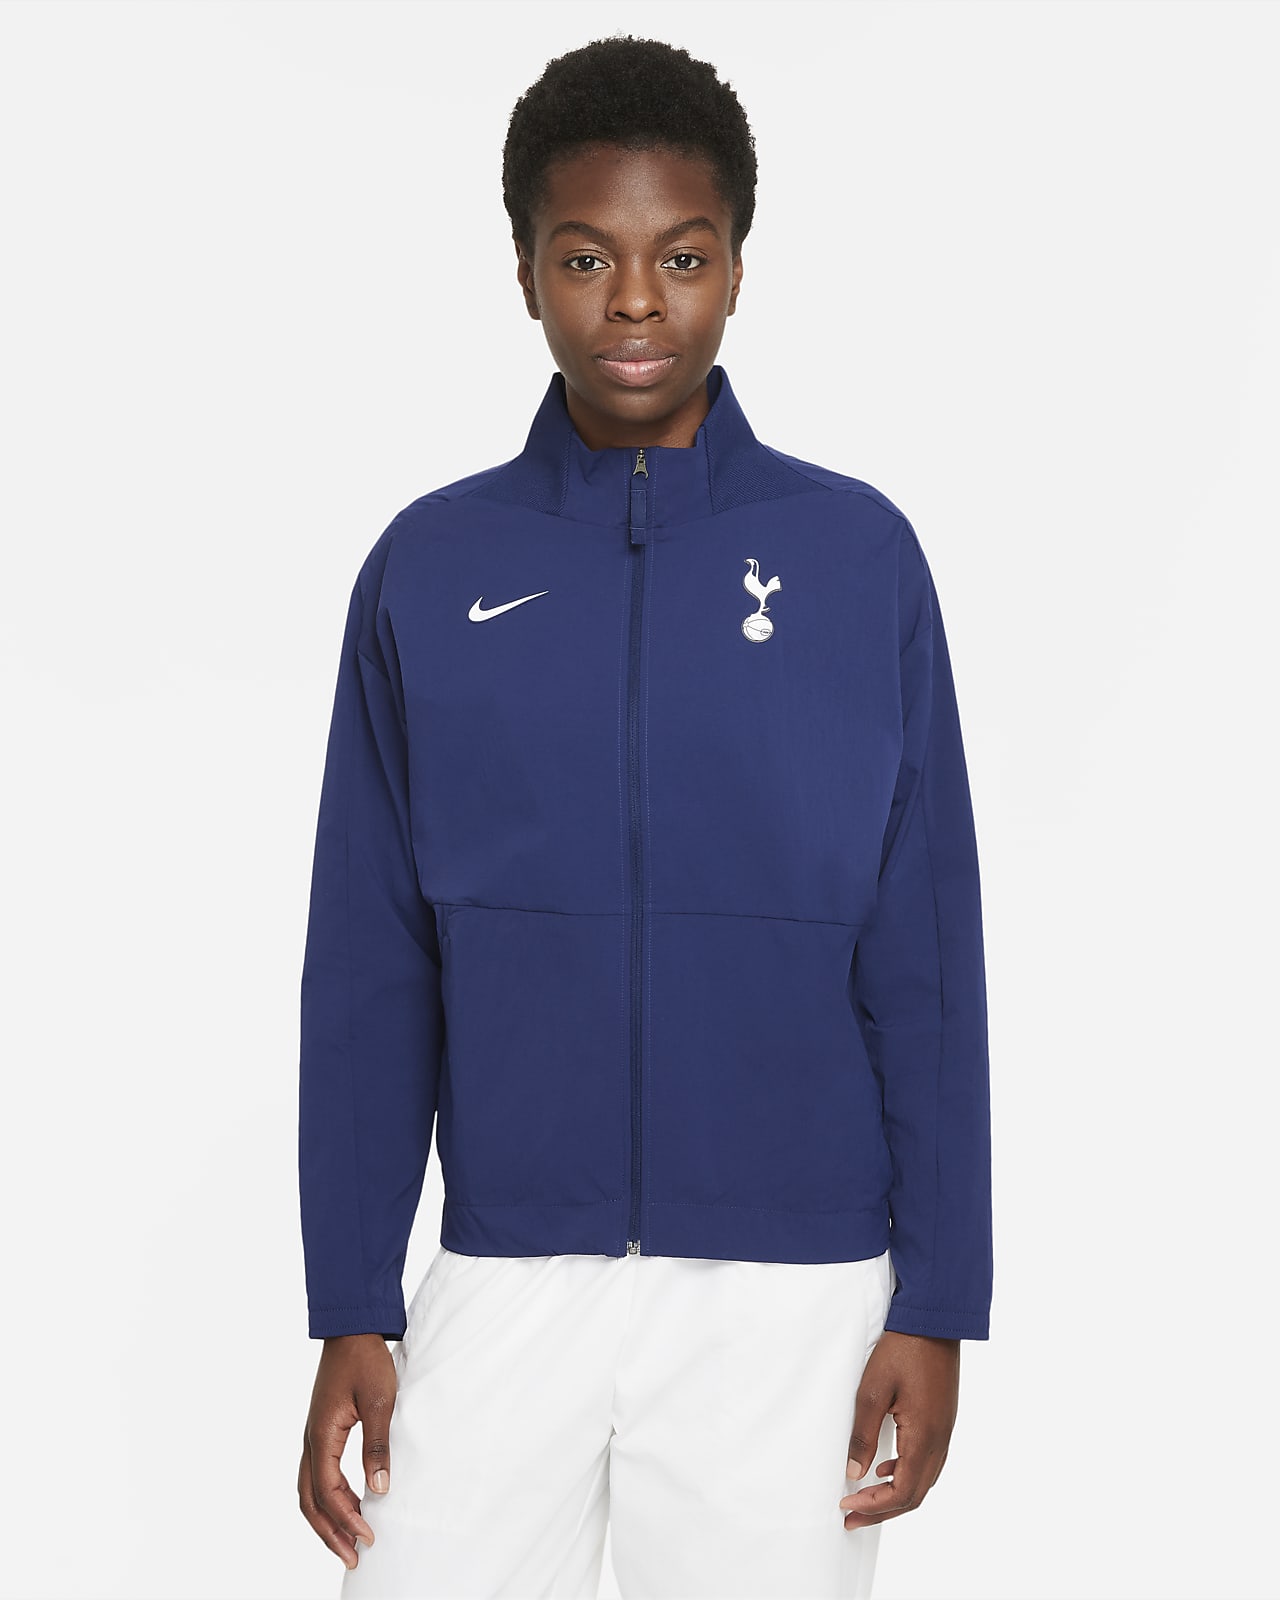 Tottenham Hotspur Jaqueta de futbol Nike Dri-FIT - Dona